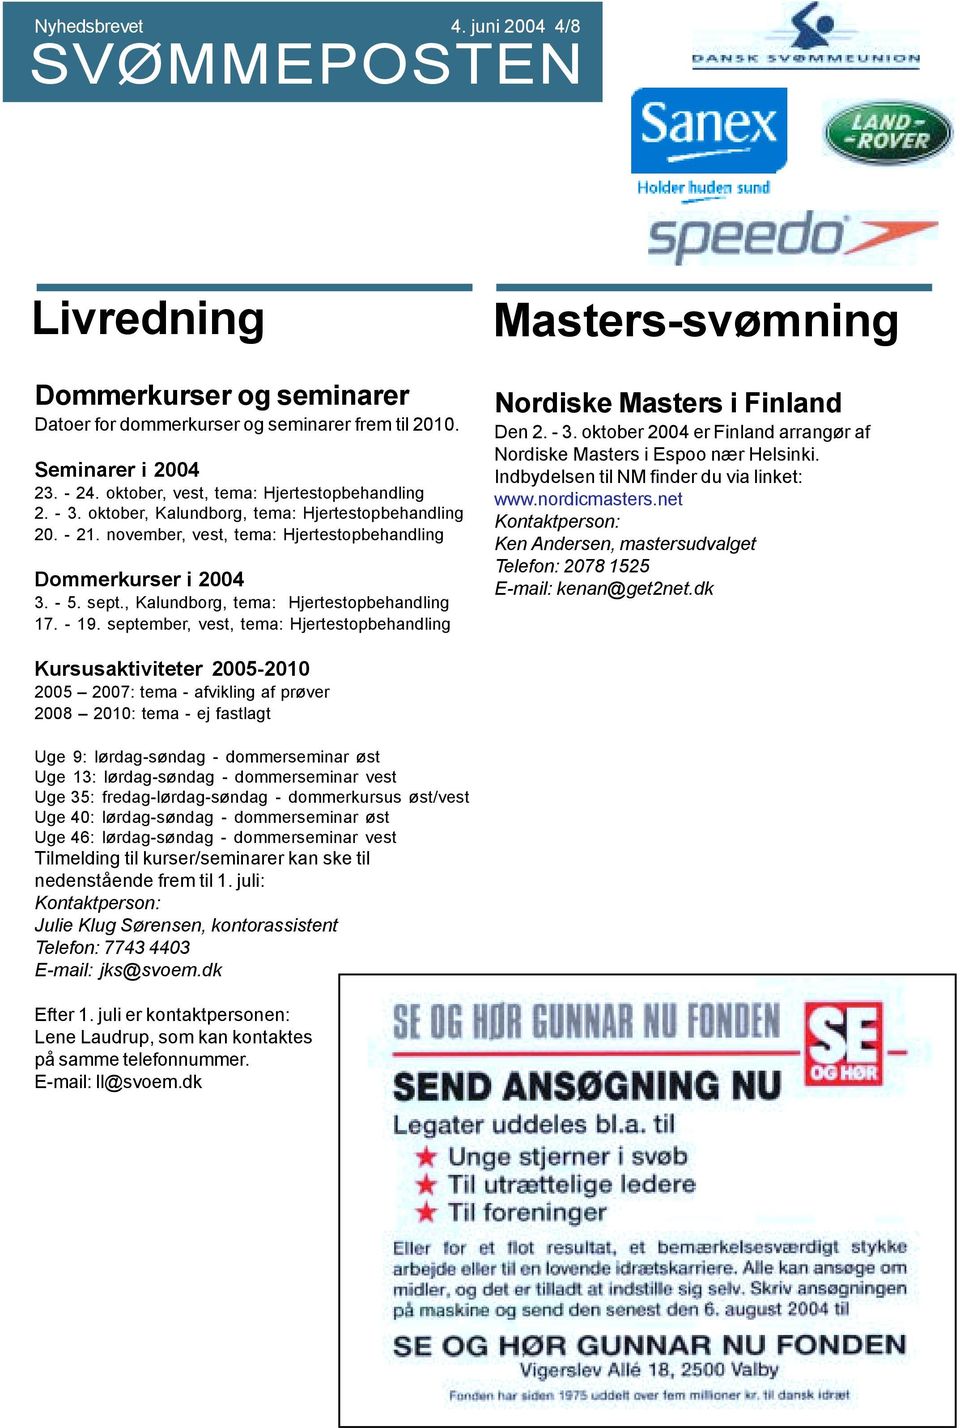 september, vest, tema: Hjertestopbehandling Masters-svømning Nordiske Masters i Finland Den 2. - 3. oktober 2004 er Finland arrangør af Nordiske Masters i Espoo nær Helsinki.